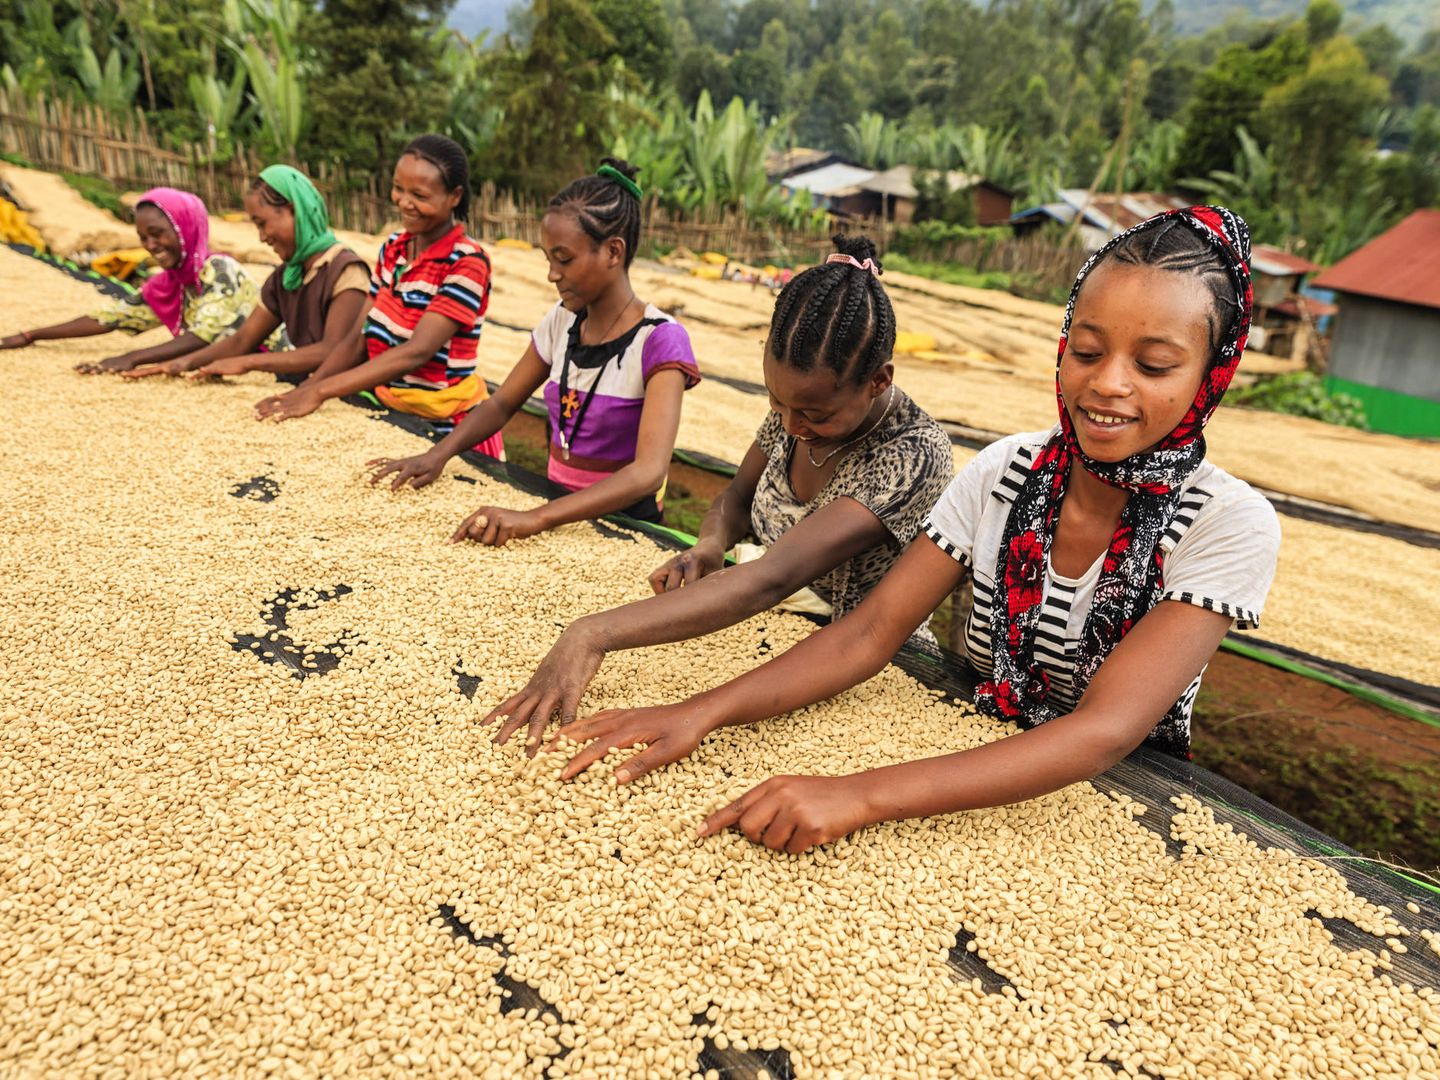 Mujeres y niñas etíopes recolectan y separan los granos de la planta del café. (iStock)